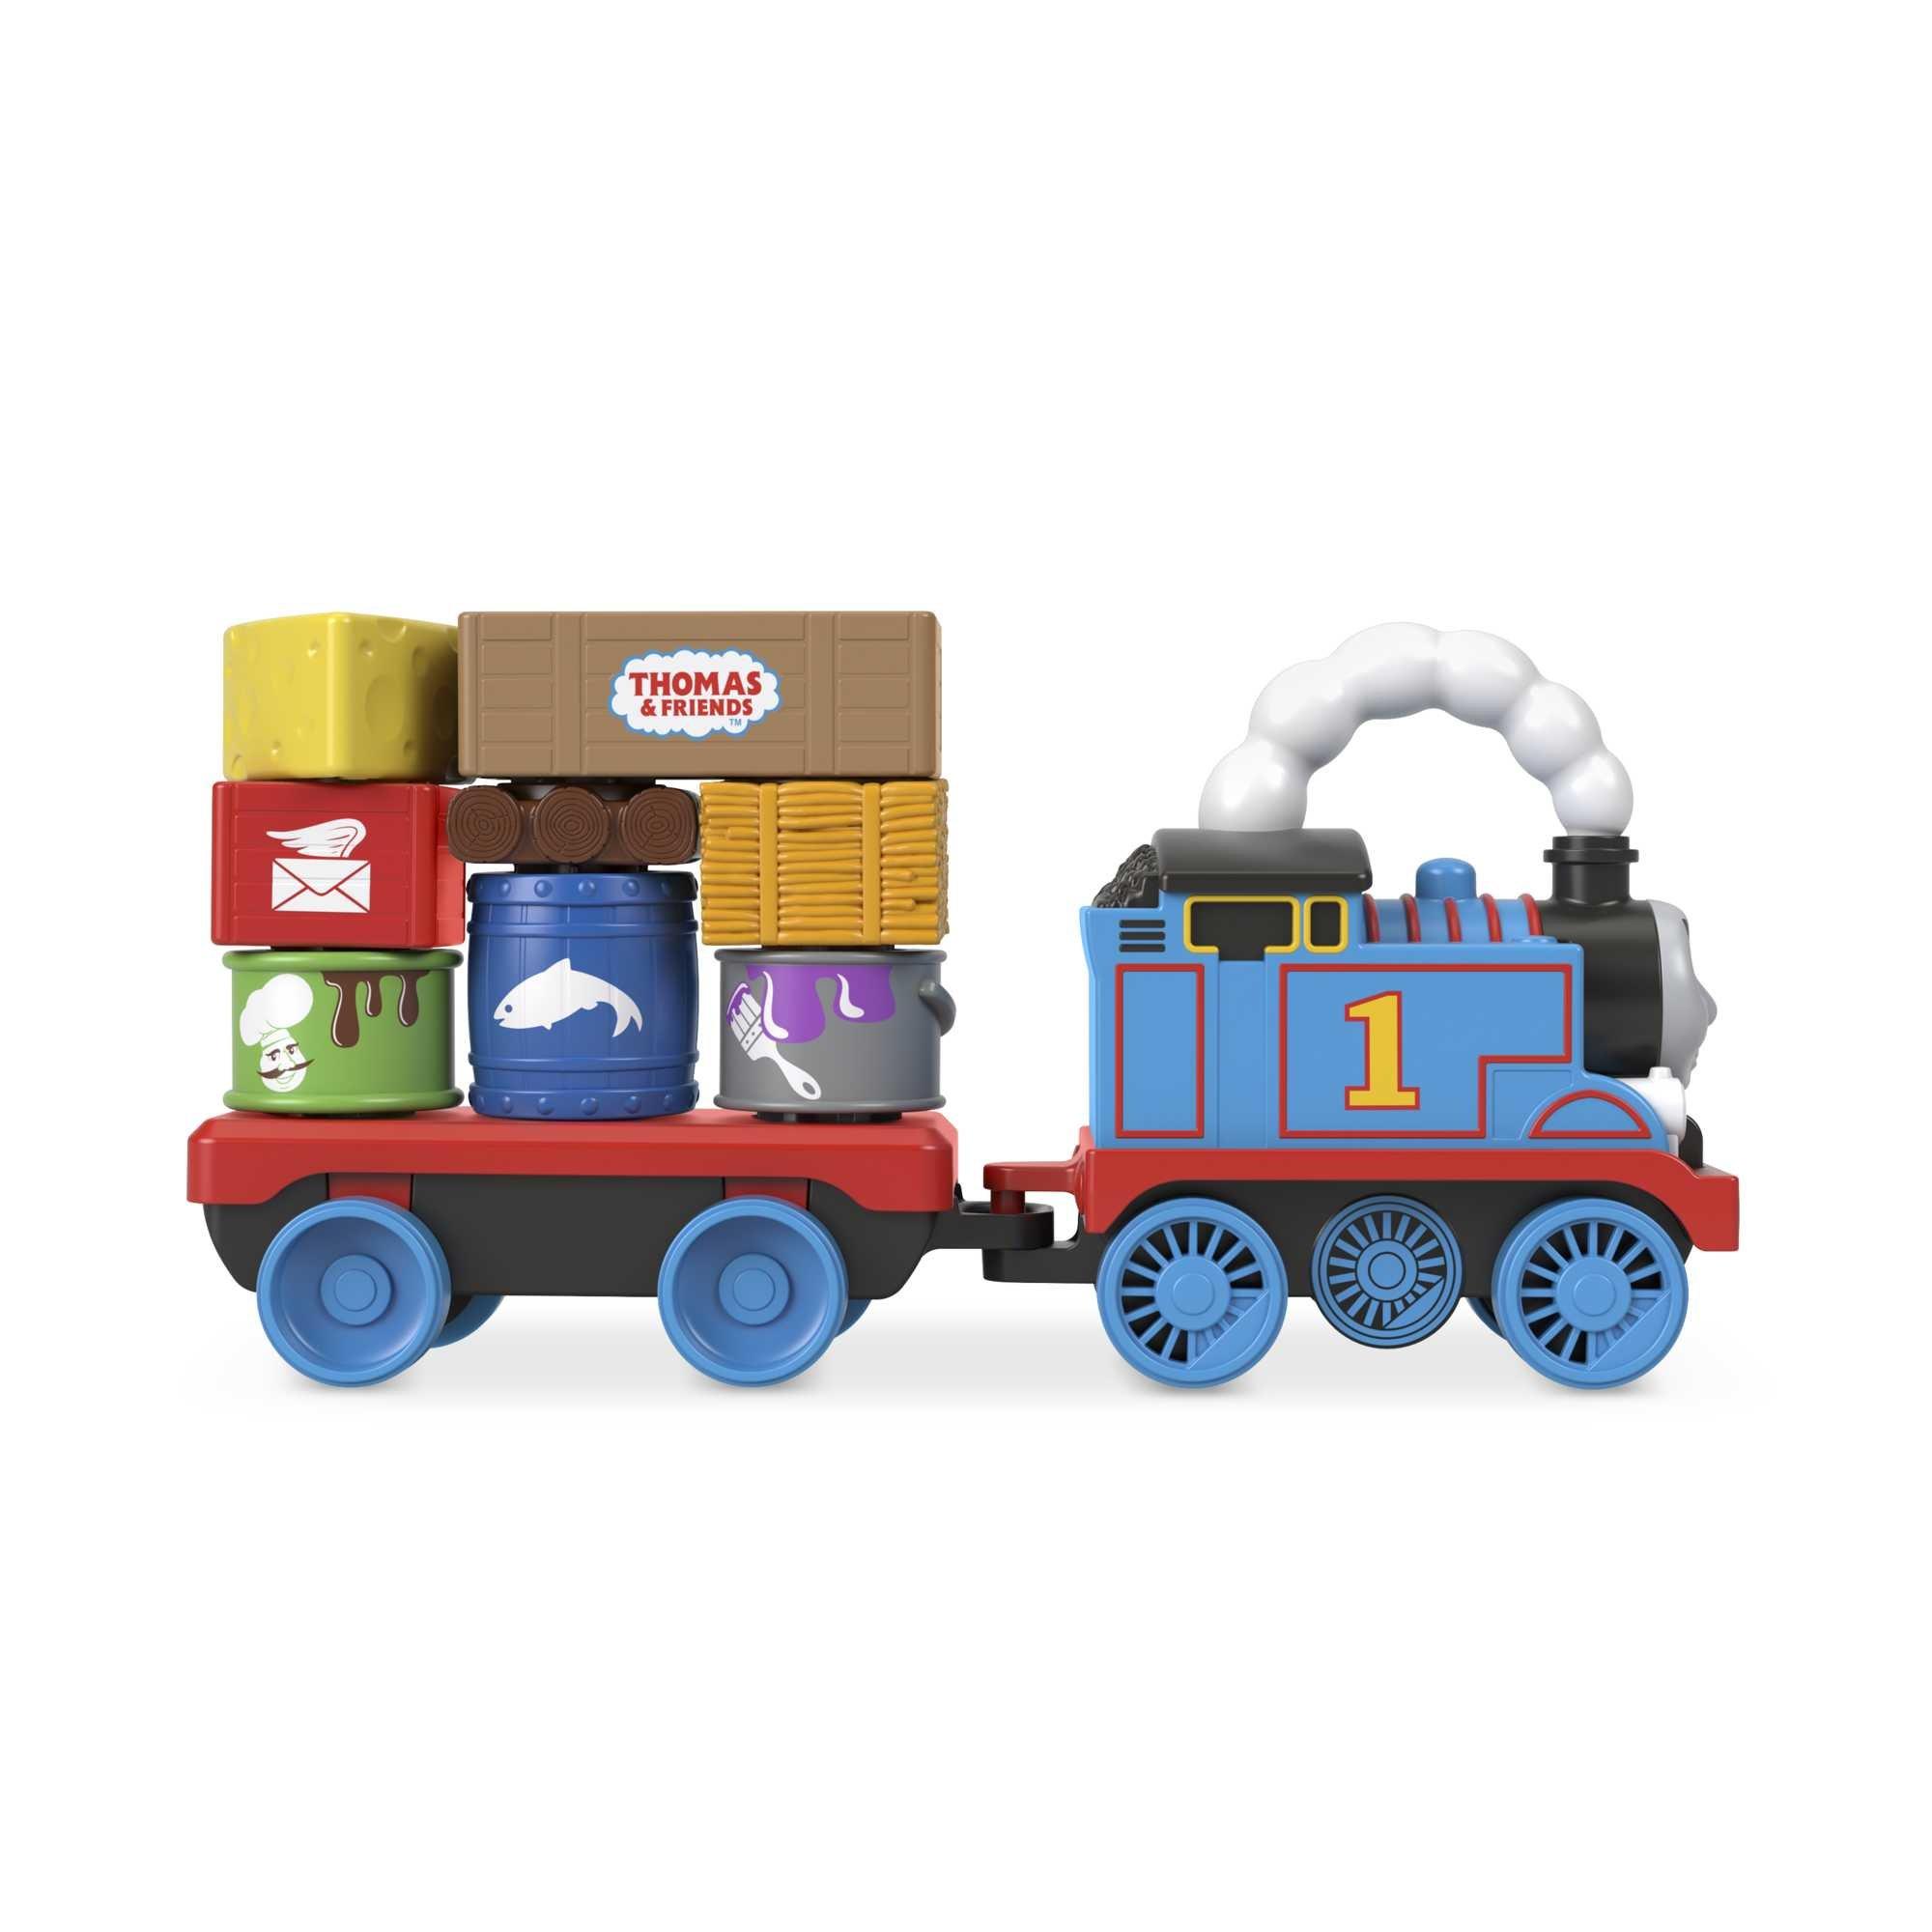 Fisher Price  Thomas und seine Freunde Wobble Cargo Stacker Train 